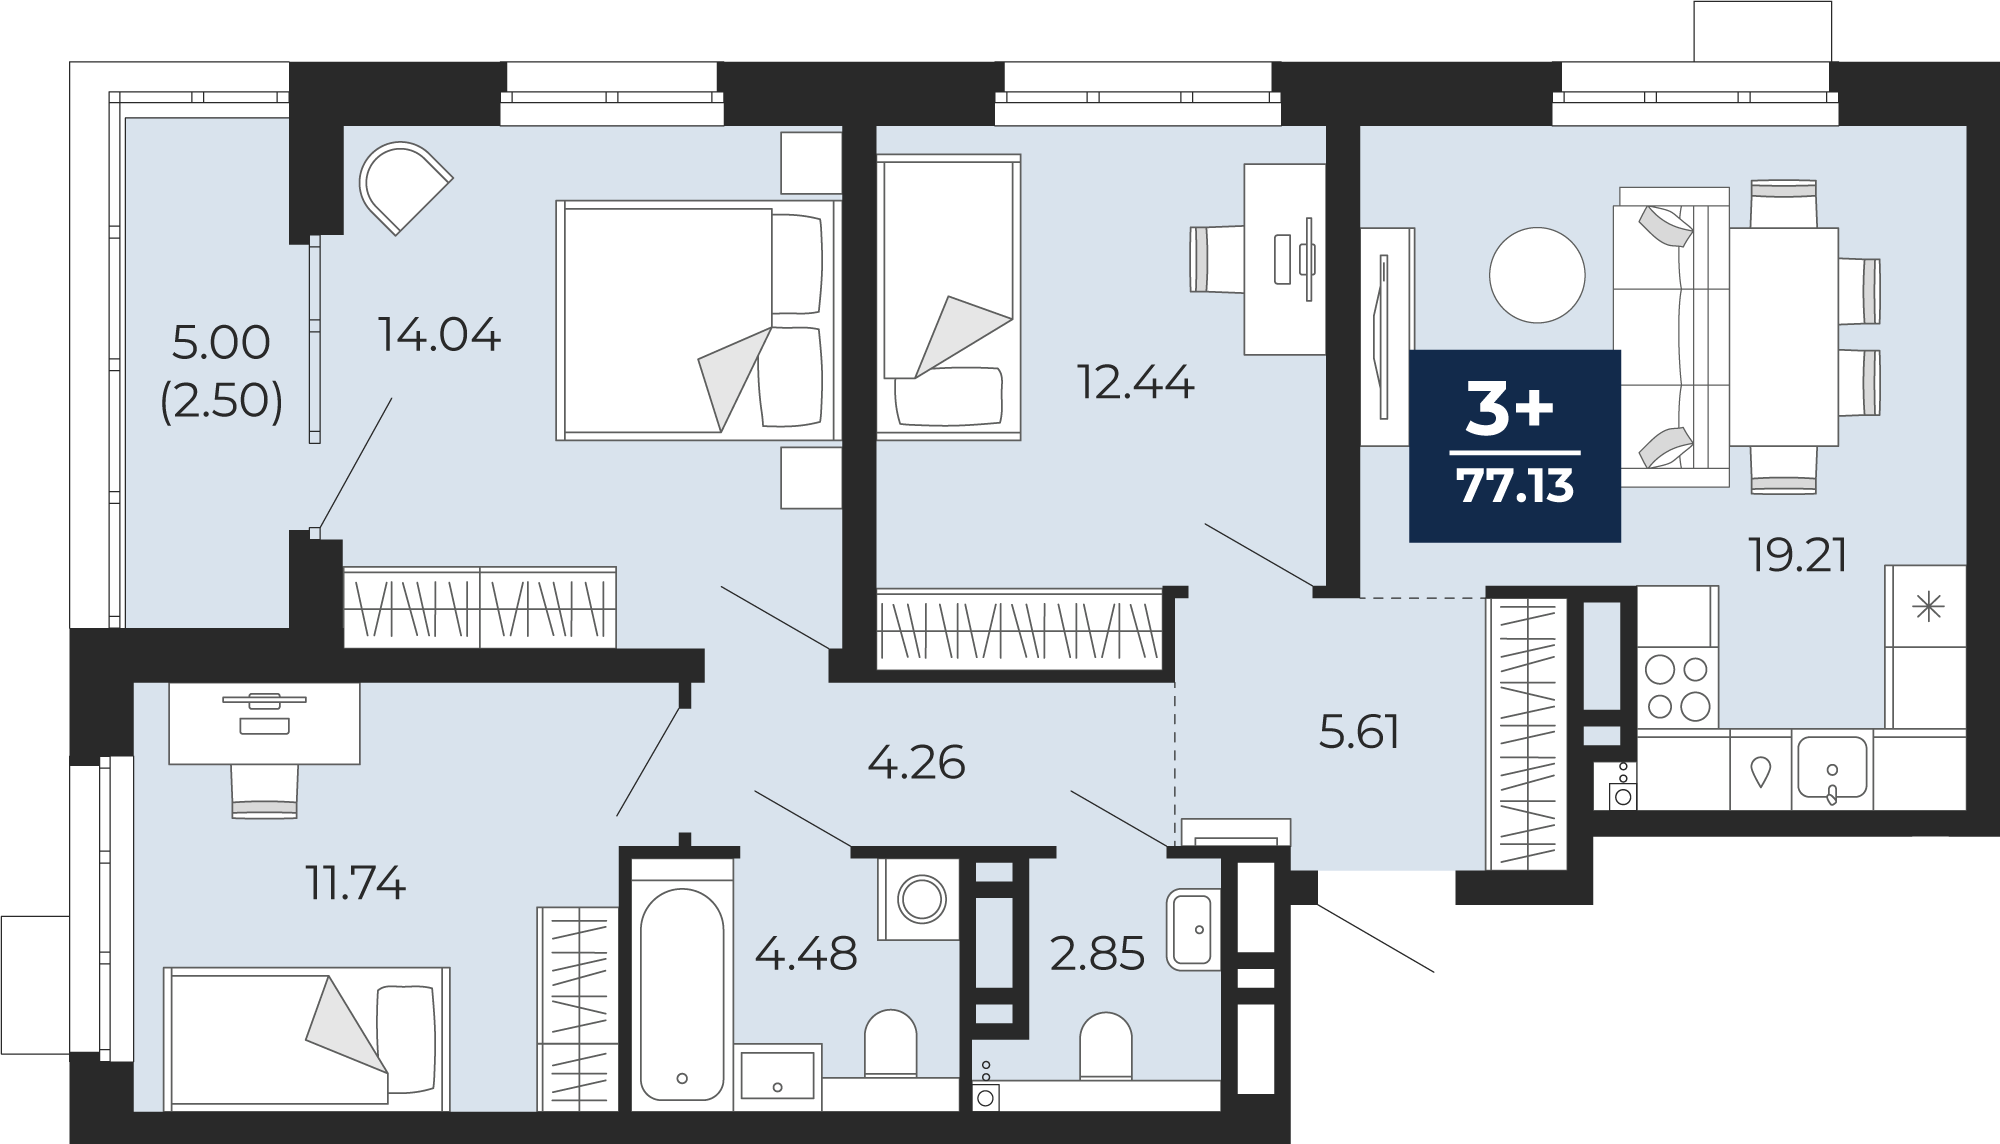 Квартира № 70, 3-комнатная, 77.13 кв. м, 10 этаж